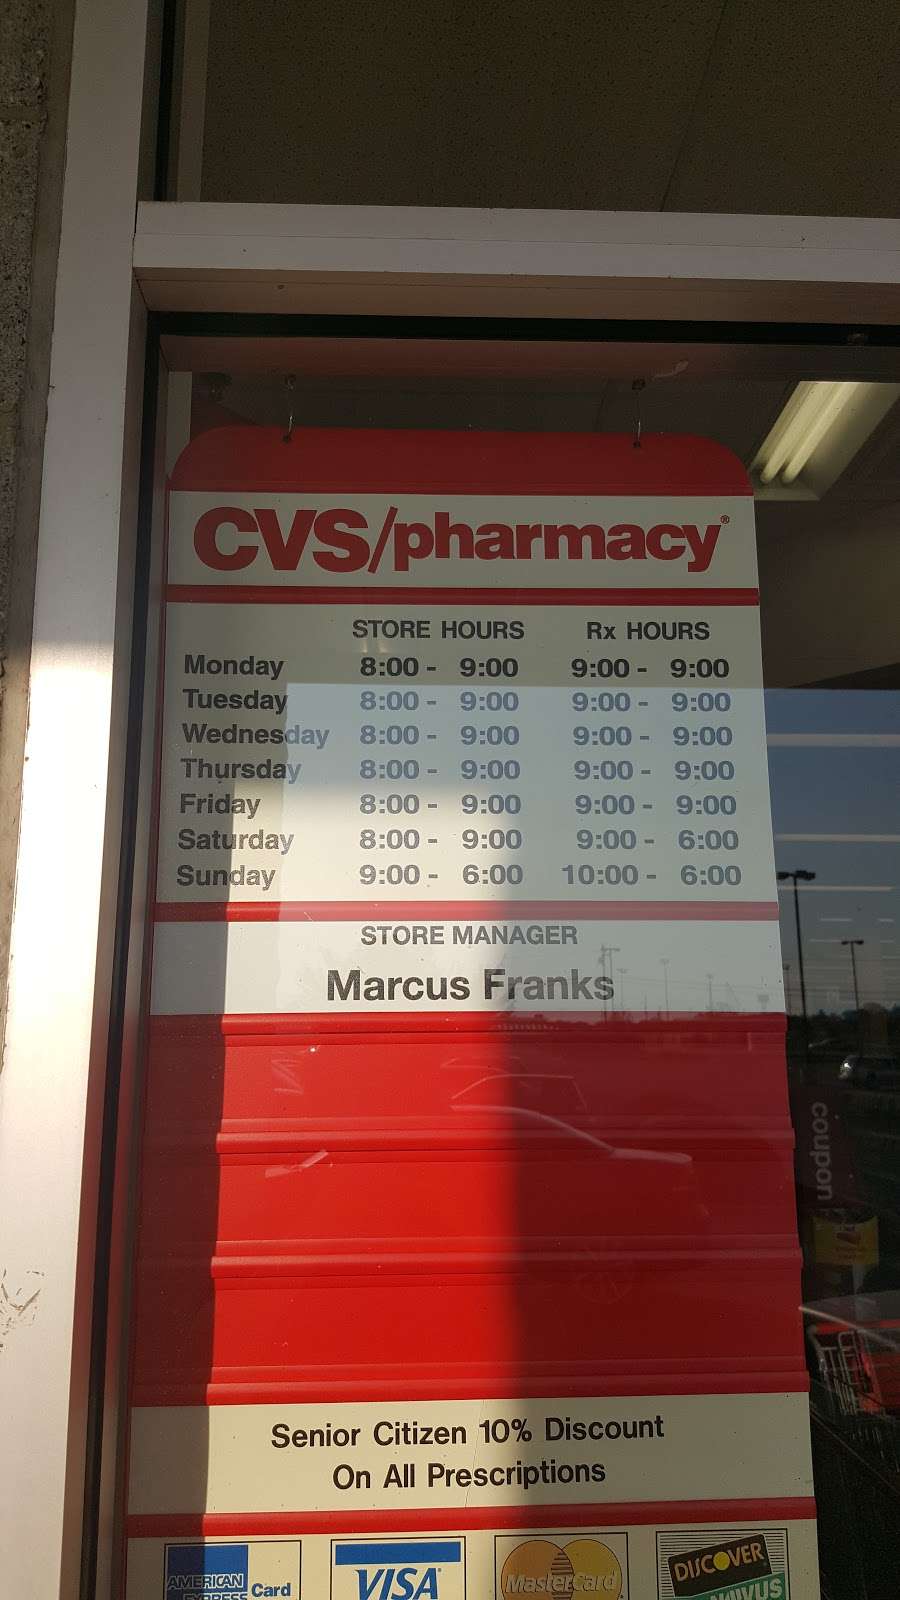 CVS Pharmacy | 188 Flowing Springs Rd, Charles Town, WV 25414 | Phone: (304) 725-9707